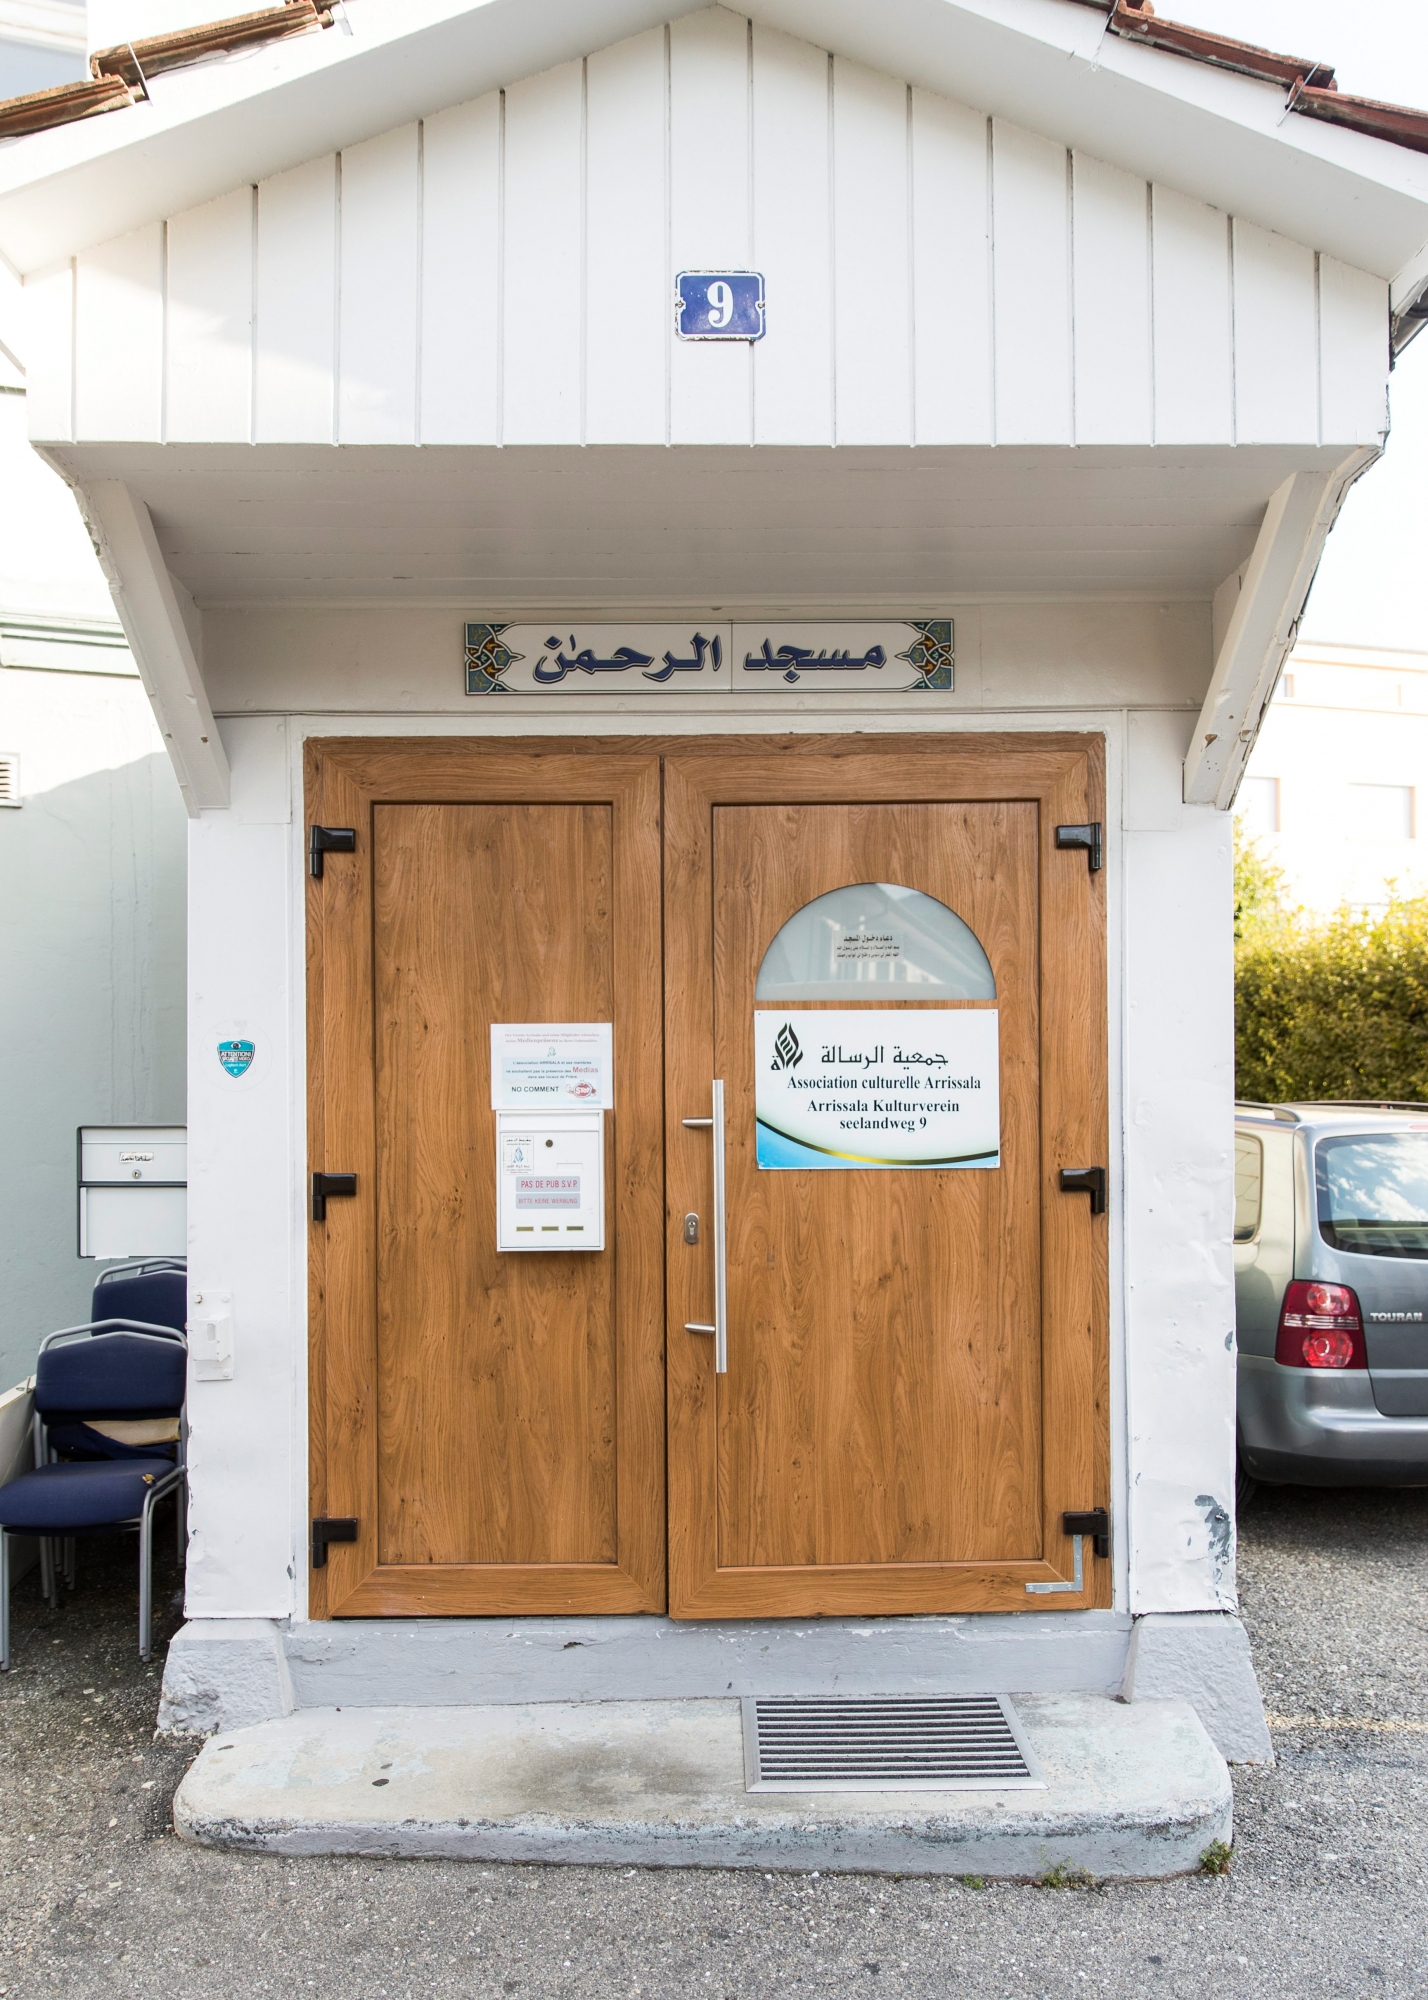 Der Eingang zur ArÄôRahman-Moschee in Biel, am Mittwoch, 23. August 2017. Der Bieler Imam Abu Ramadan predigte in der ArÄô Rahman Moschee. (KEYSTONE/Peter Klaunzer) SCHWEIZ MOSCHEE BIEL